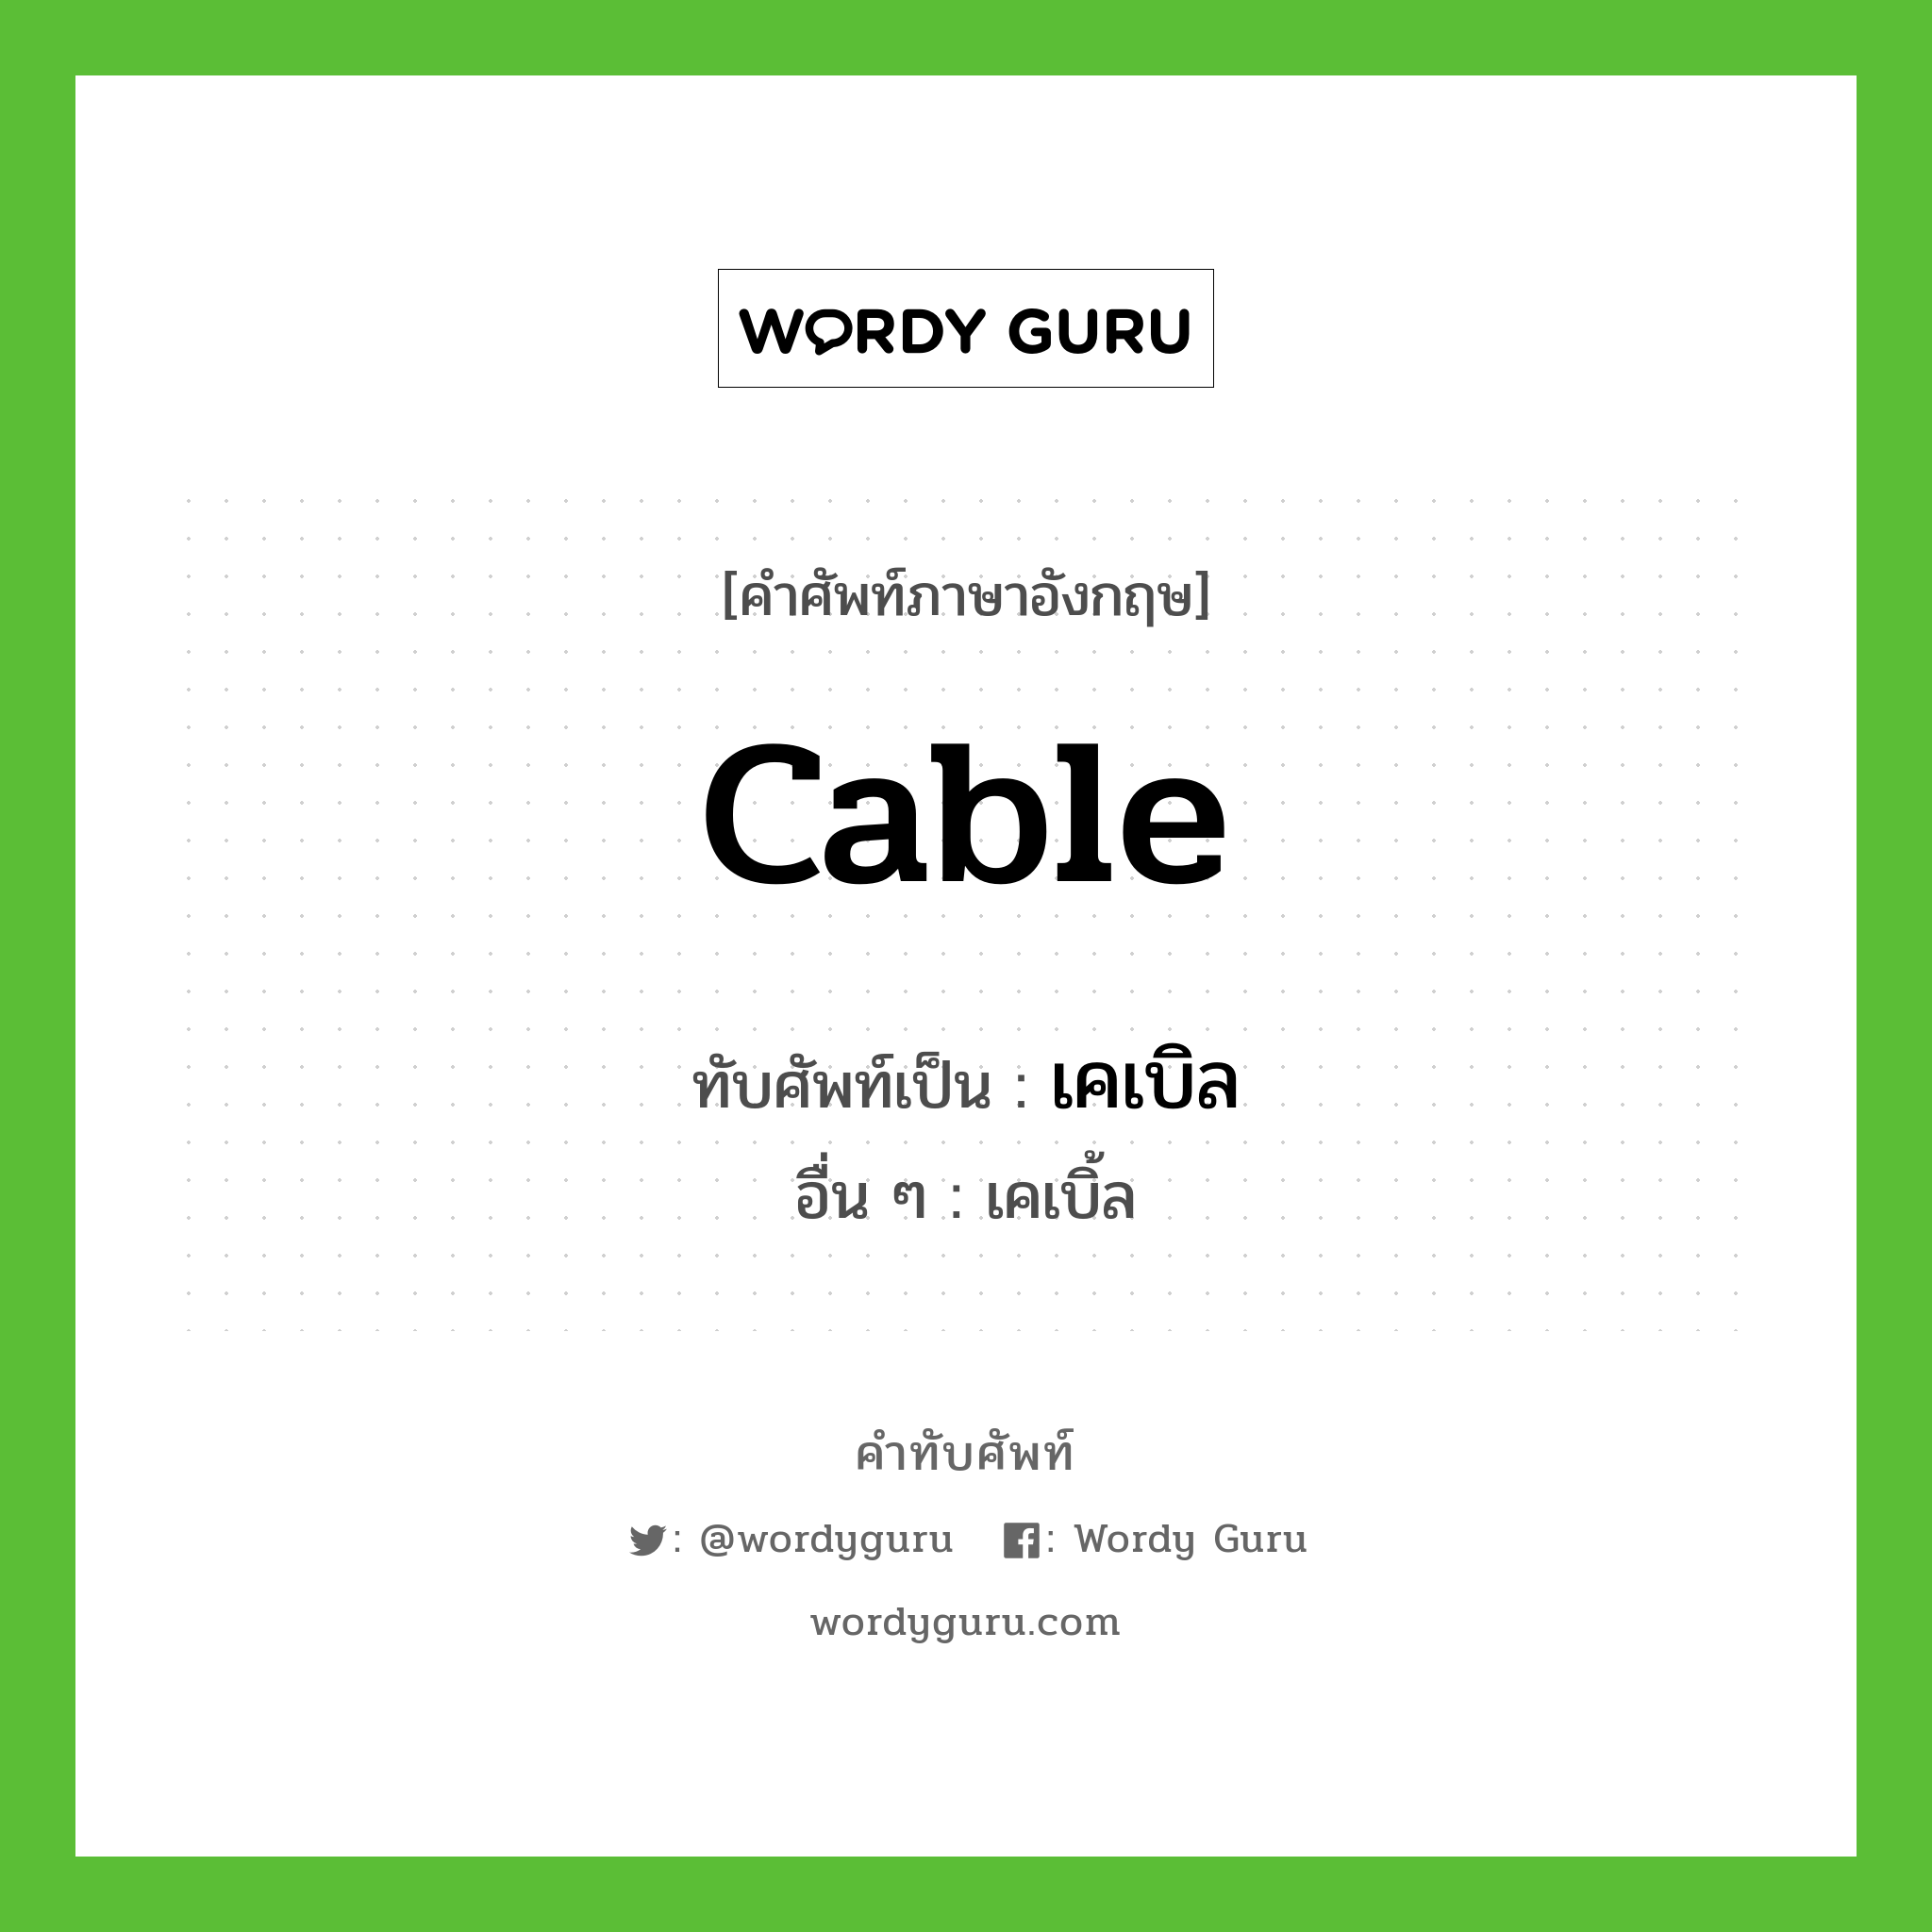 cable เขียนเป็นคำไทยว่าอะไร?, คำศัพท์ภาษาอังกฤษ cable ทับศัพท์เป็น เคเบิล อื่น ๆ เคเบิ้ล